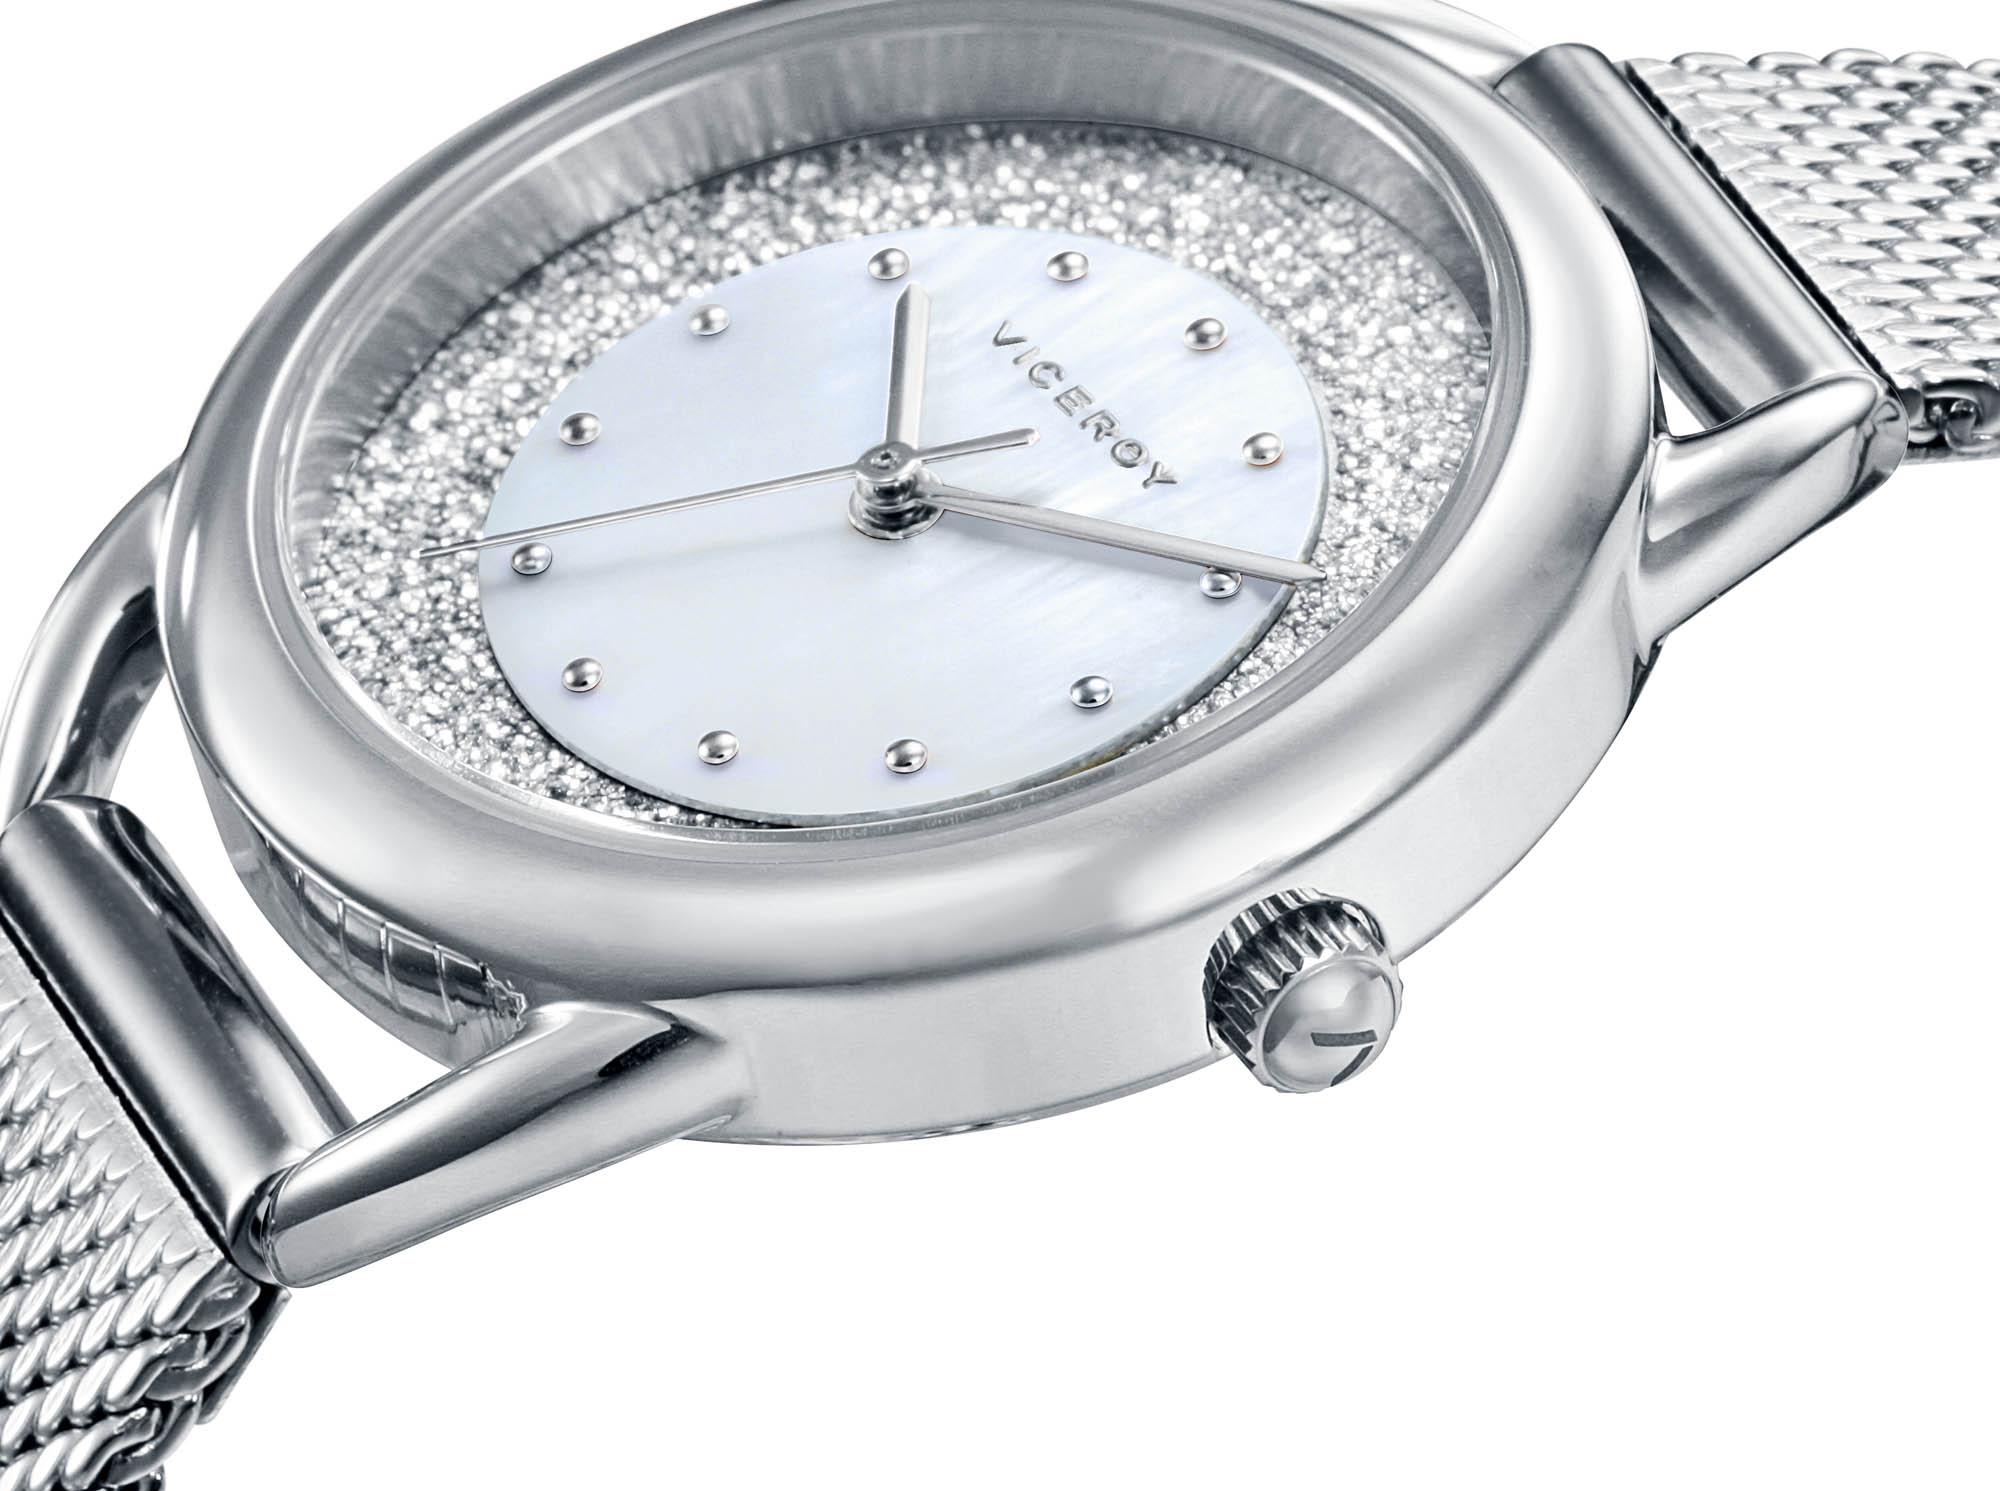 Comprar online y barato Reloj mujer Viceroy acero 3 agujas números árabes  ref. 401072-05 sin costes de envío.